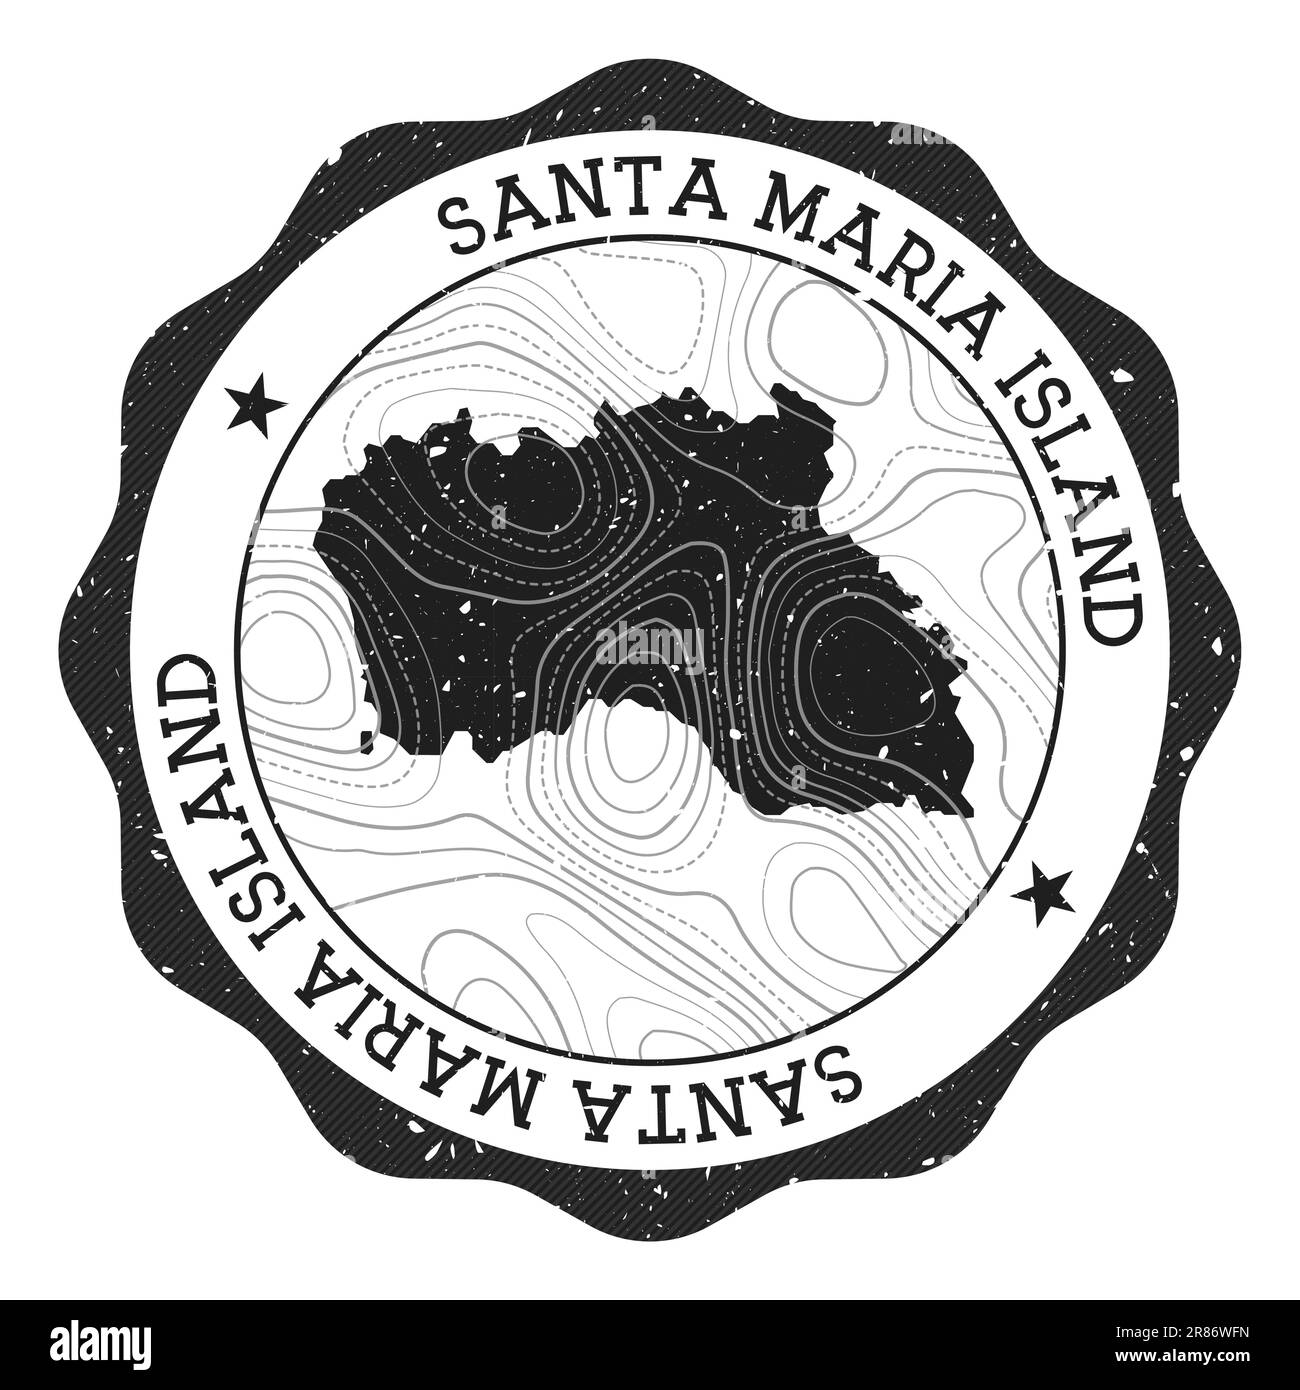 Stempel auf der Insel Santa Maria. Runder Aufkleber mit Karte mit topografischen Isolinien. Vektordarstellung. Kann als Abzeichen, Logo, Label, sti verwendet werden Stock Vektor